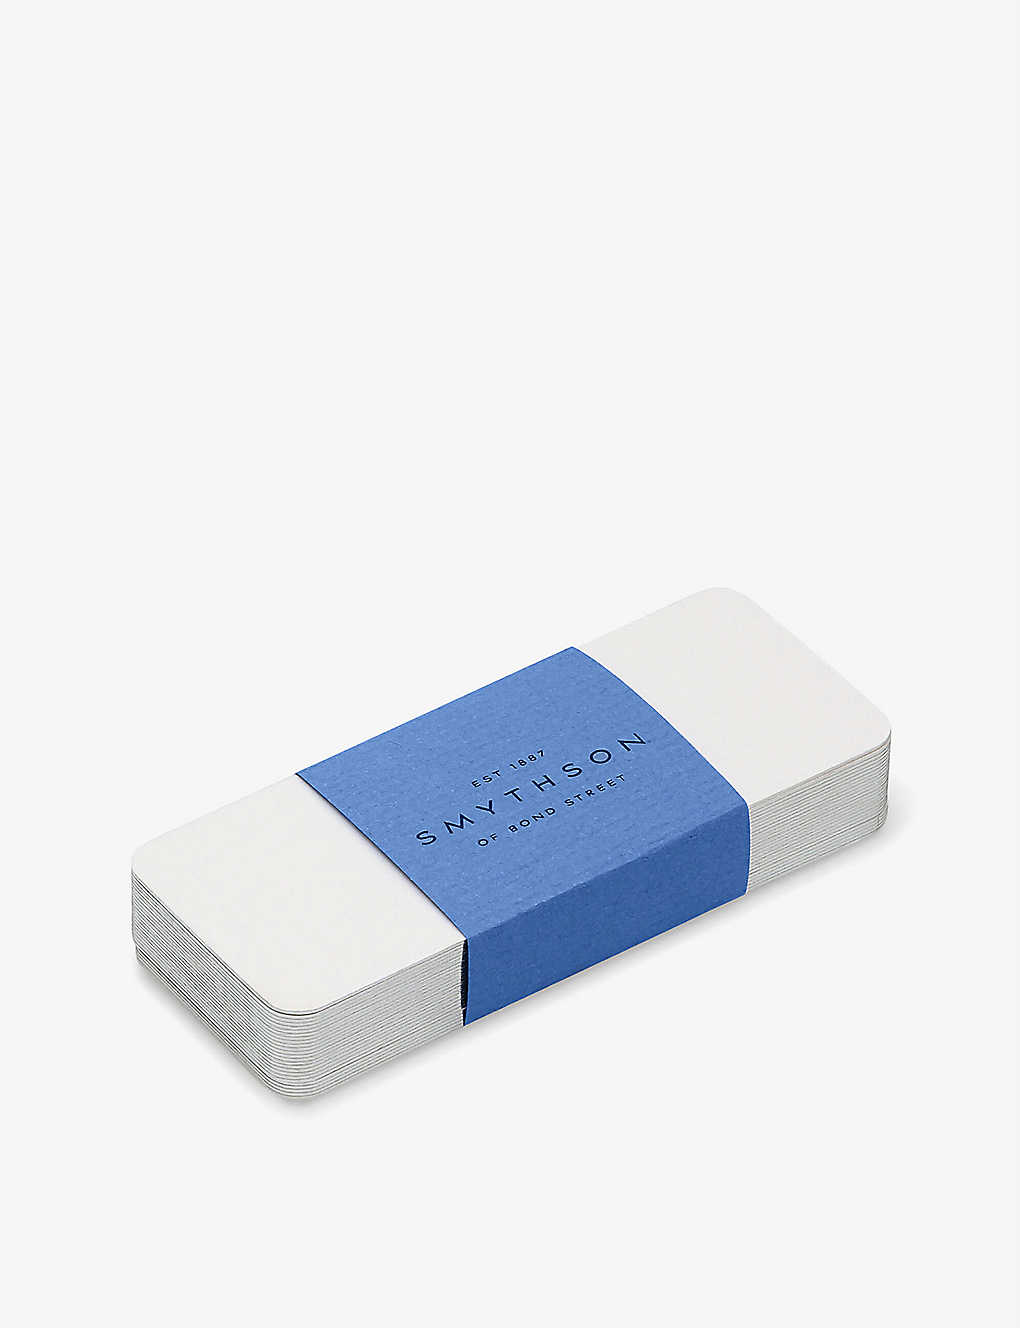 春の新作 売り切り御免 SMYTHSON プレイス カード ボックス 25枚セット Place cards box of 25 #WHITE mnbaladi.com mnbaladi.com